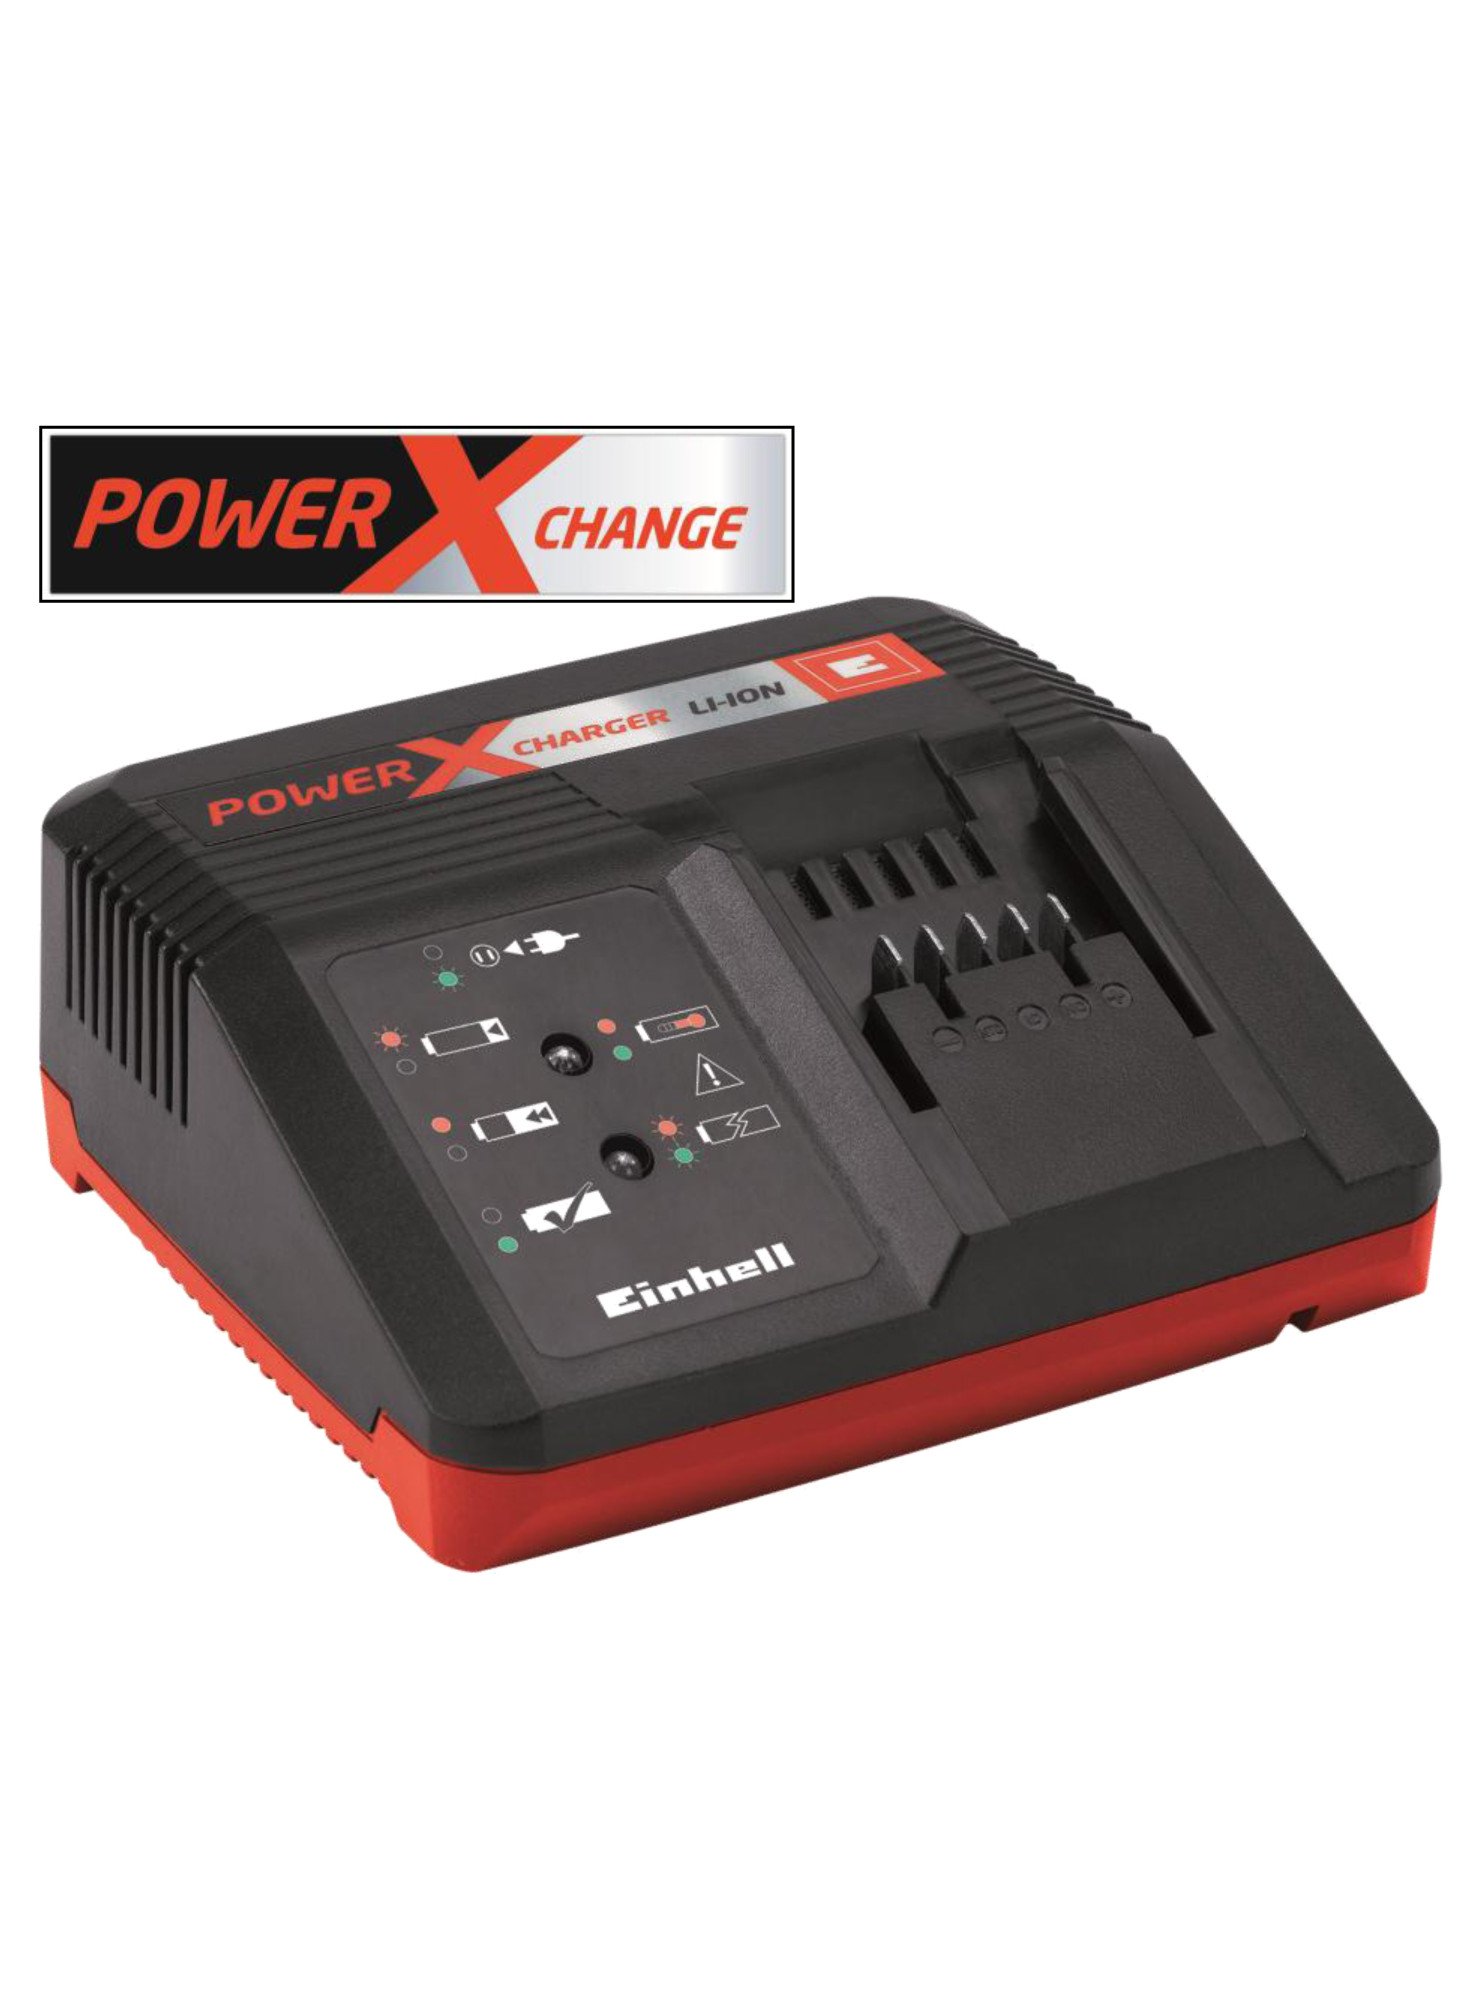 CHARGEUR EINHELL POWER X CHANGE de Einhell - tondeuse et outil à batterie dans Pieces Detachees